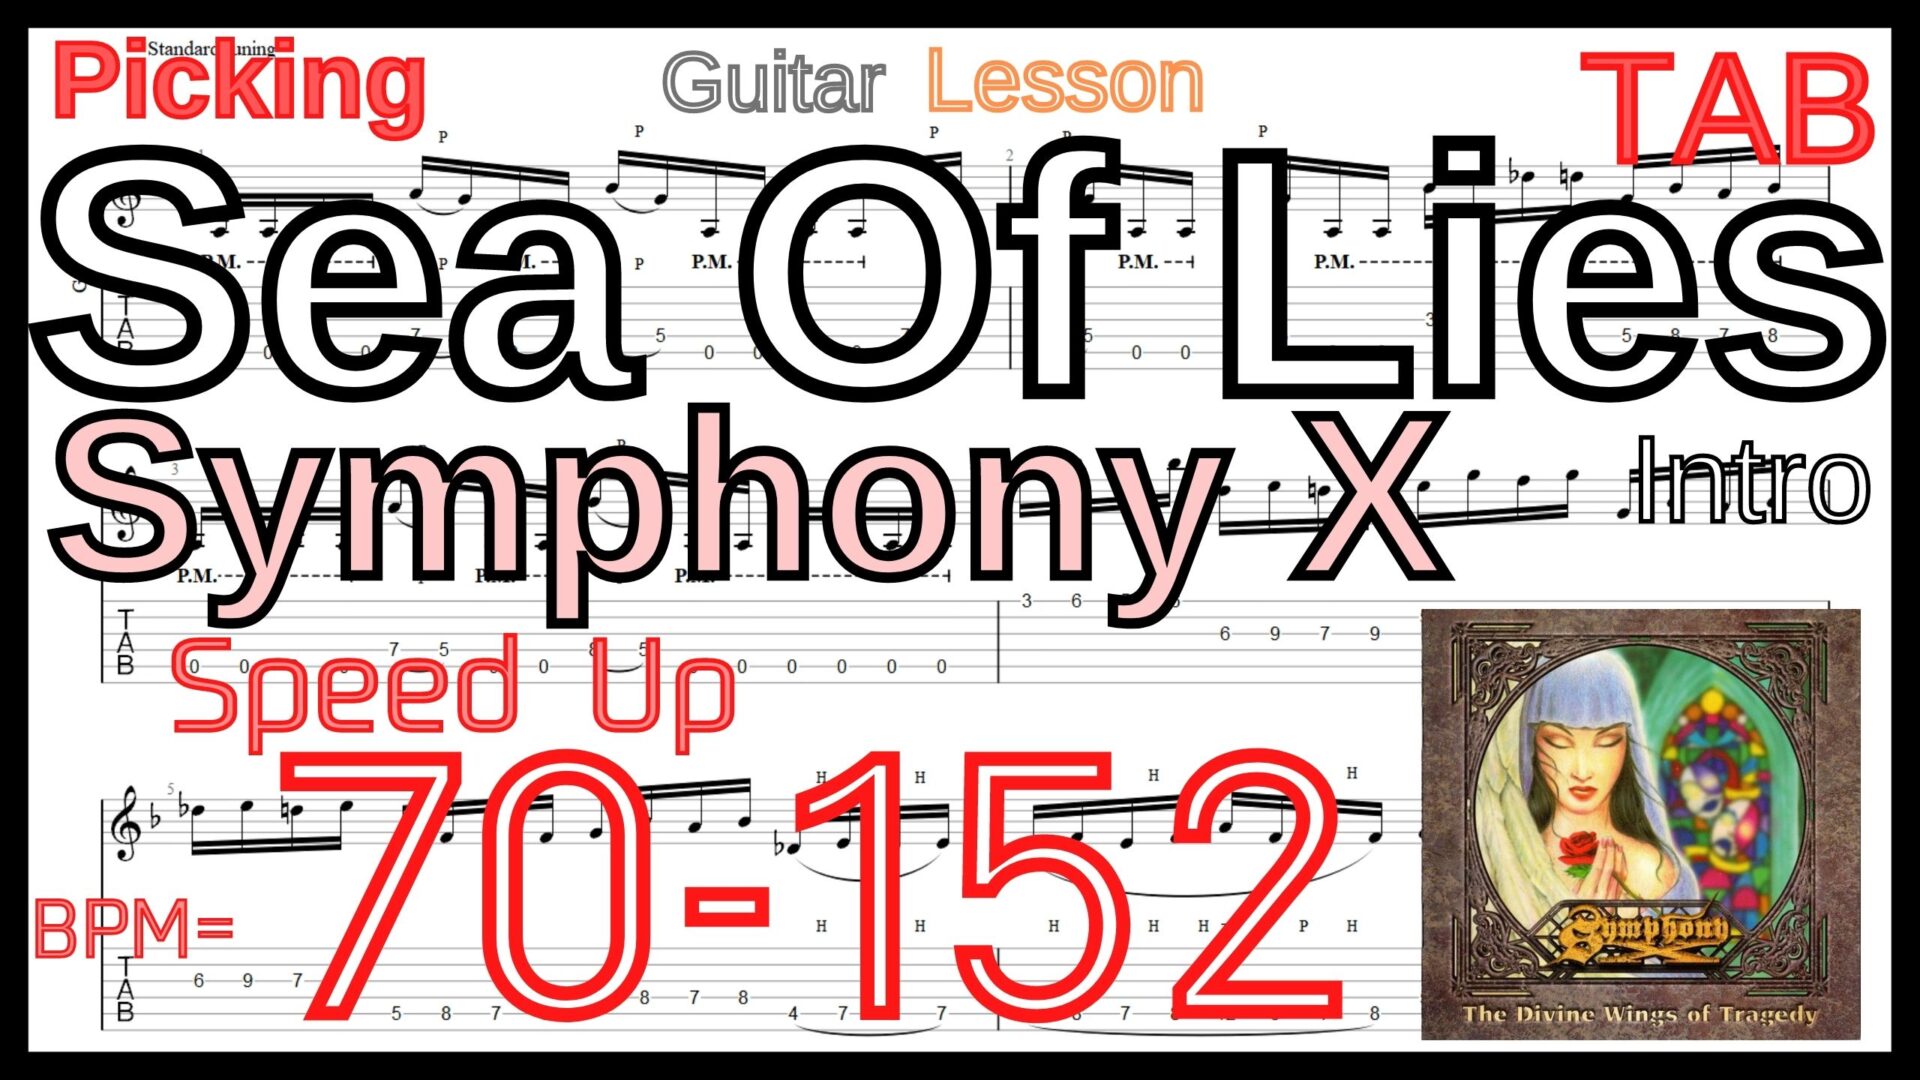 【ギタータッピング上達練習TAB】Sea Of Lies / Symphony X Intro Guitar Michael Romeo シンフォニーX マイケルロメオ ギター基礎練習 BPM70-152【ライトハンド】ギターでタッピング･ライトハンドが上手くなりたい人にオススメのフレーズ特集｡初心者さんにもオススメの練習方法